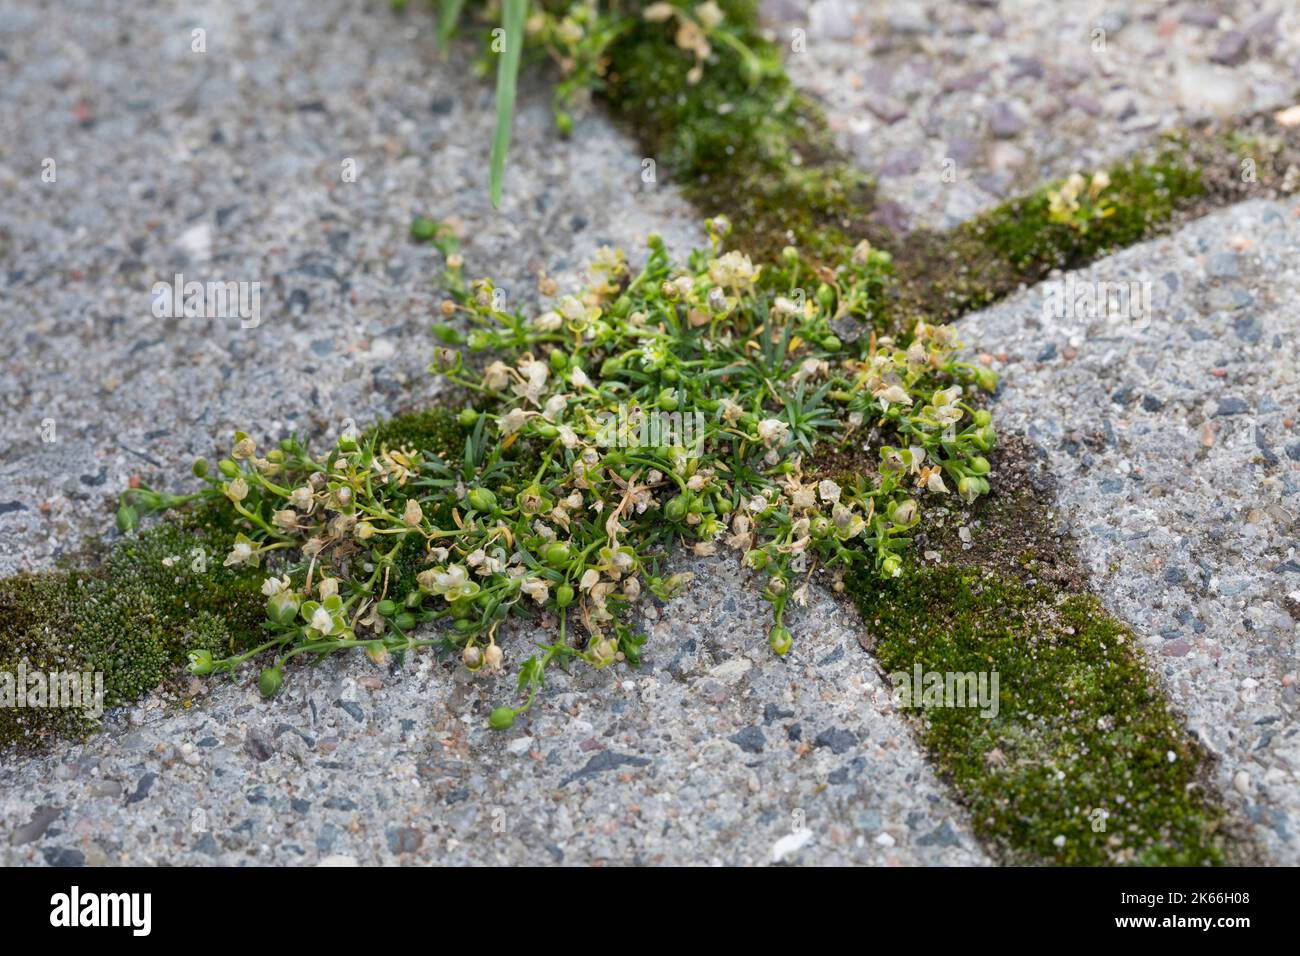 Perlamotte d'oiseau, perlamotte couchée (Sagina procumbens), poussant sur une chaussée, Allemagne Banque D'Images